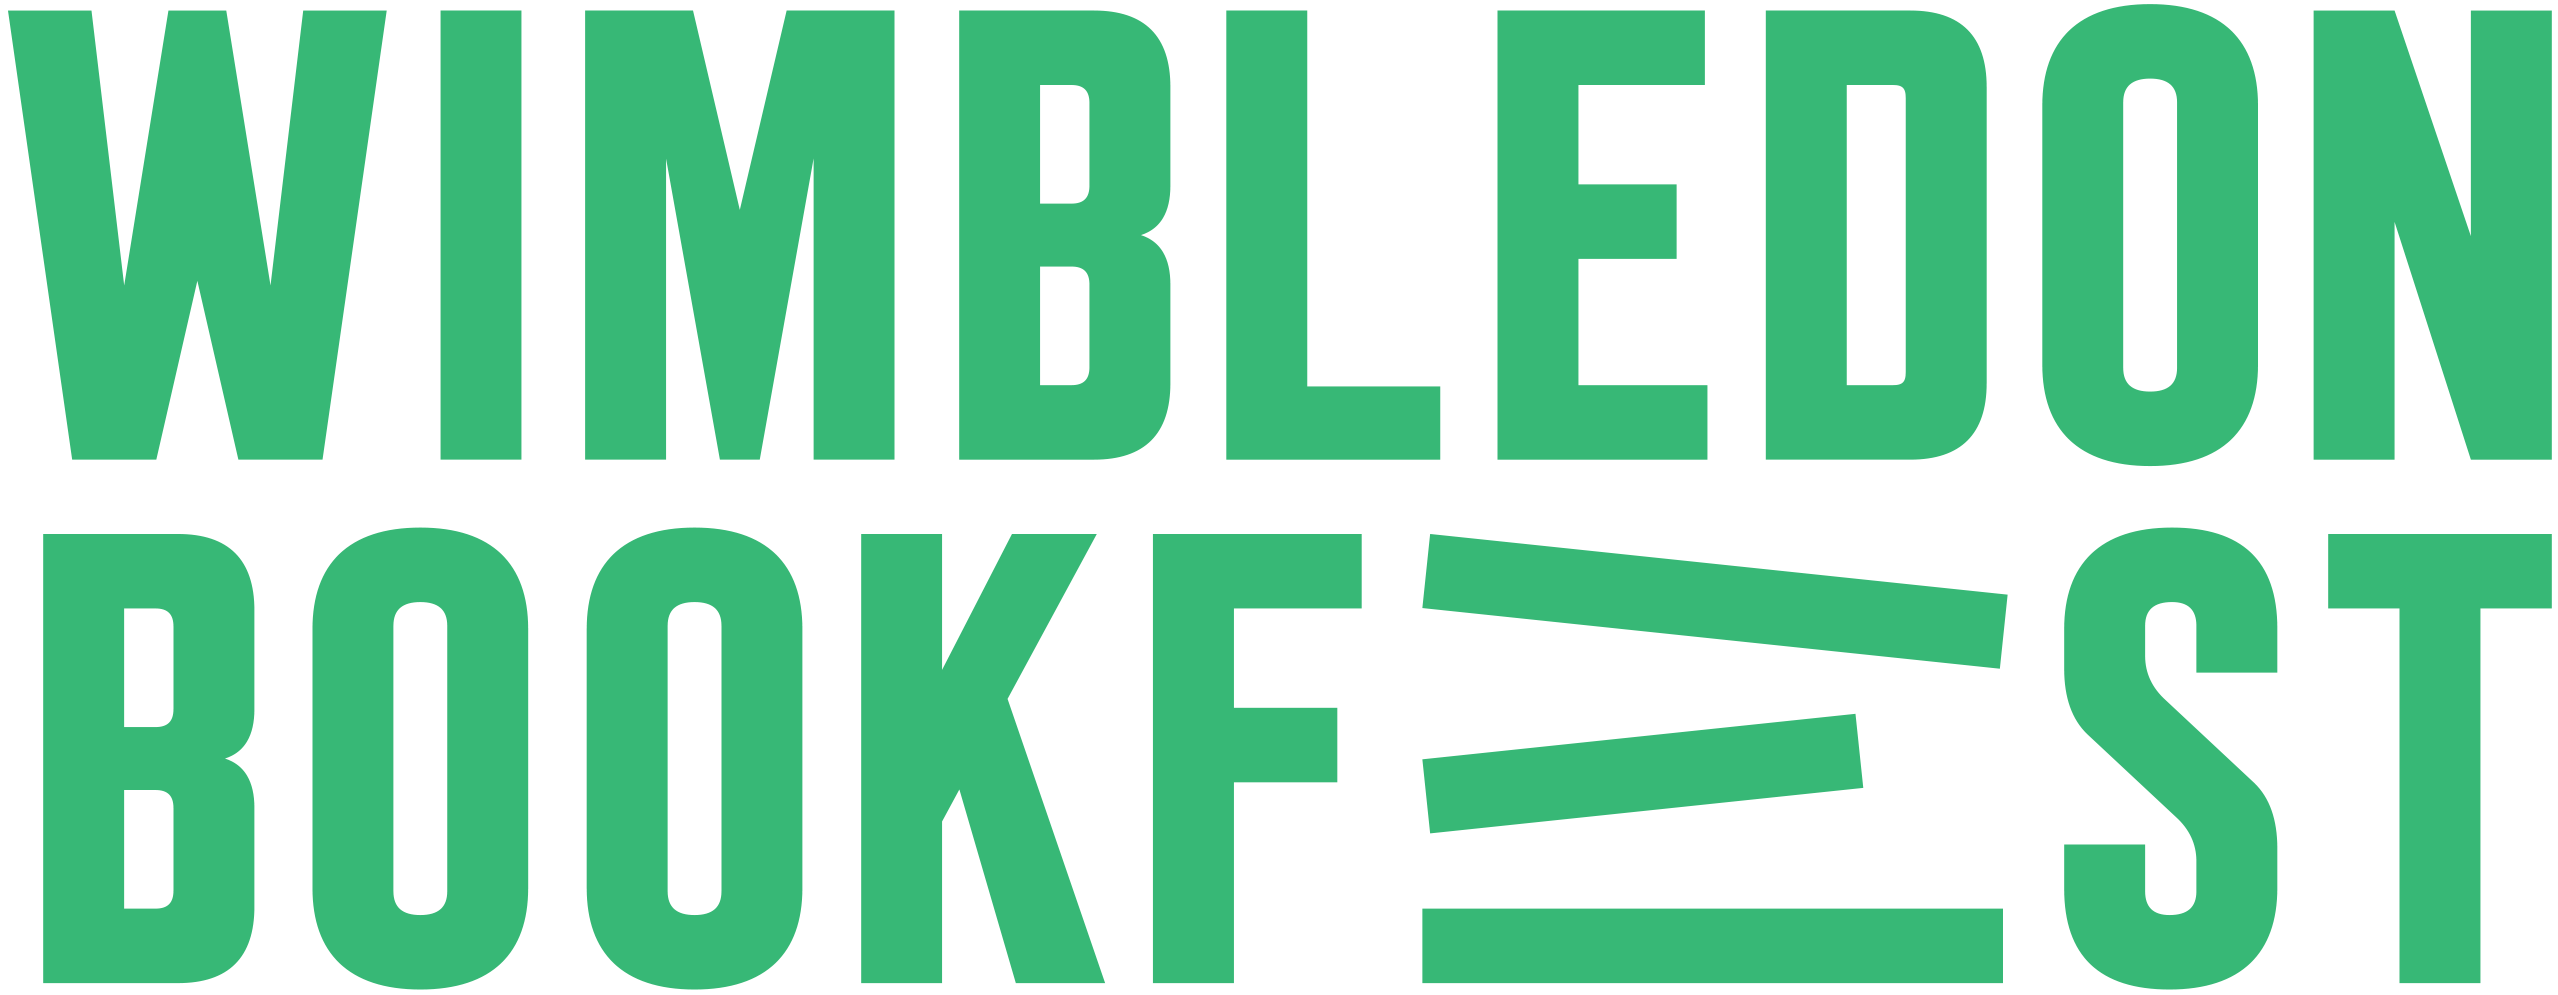 Wimbledon Book Fest Logo by Wimbledon Book Fest